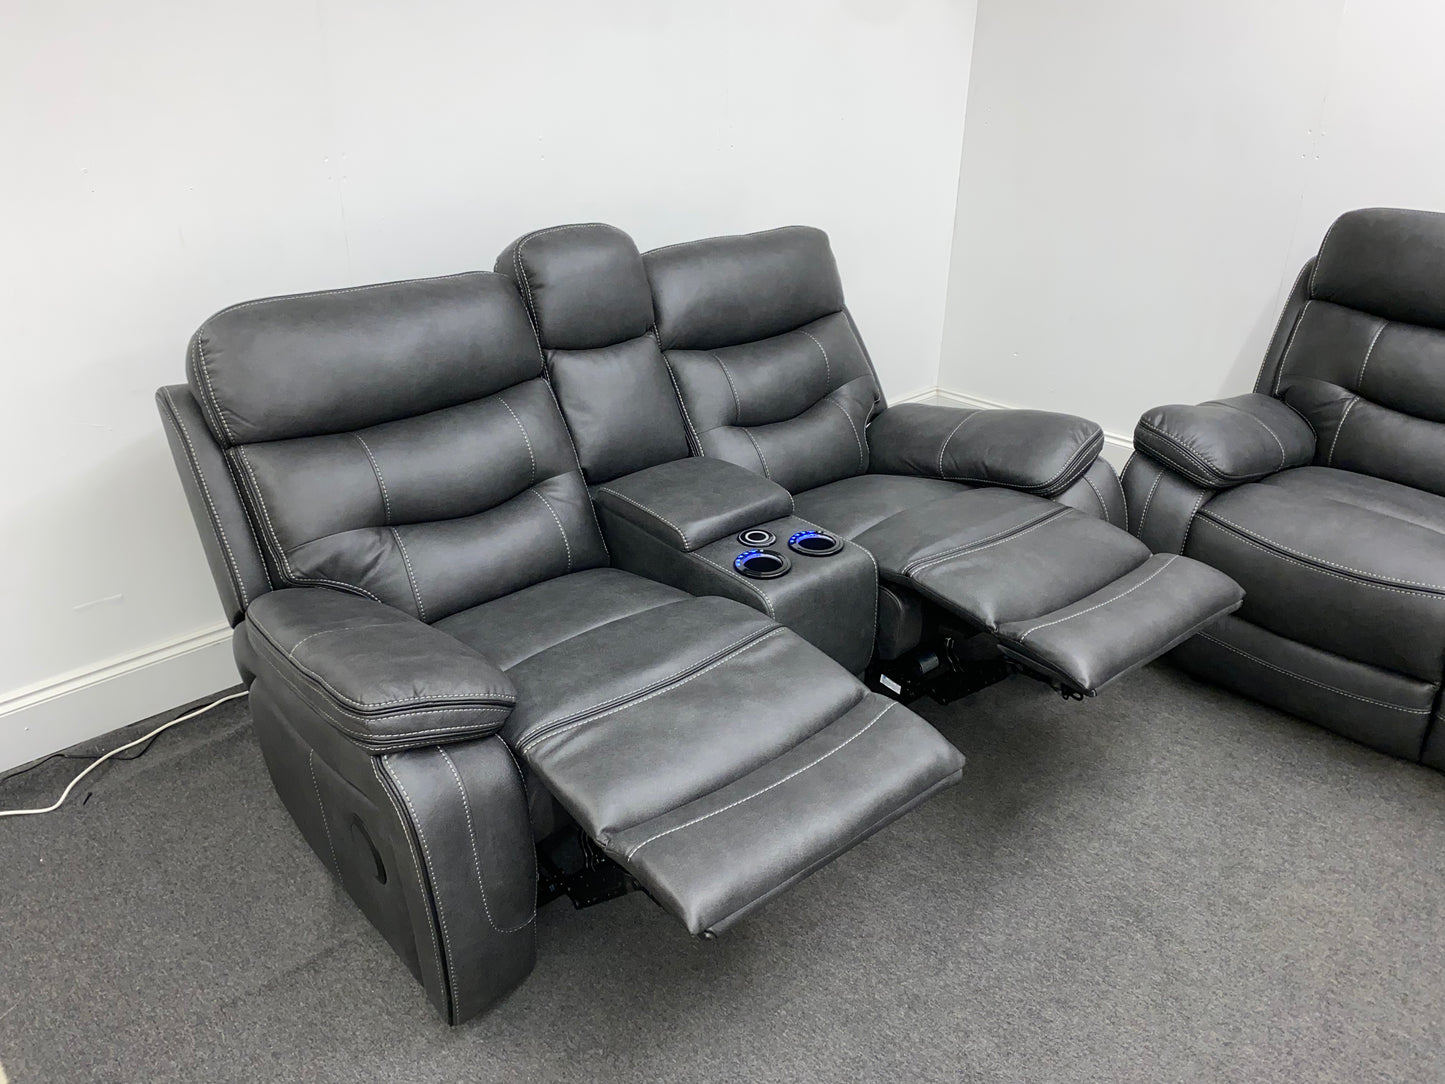 New Vinson Express Smart Tech Armchair Power Recliner 3 + 2 Seater Bundle Sofa Set